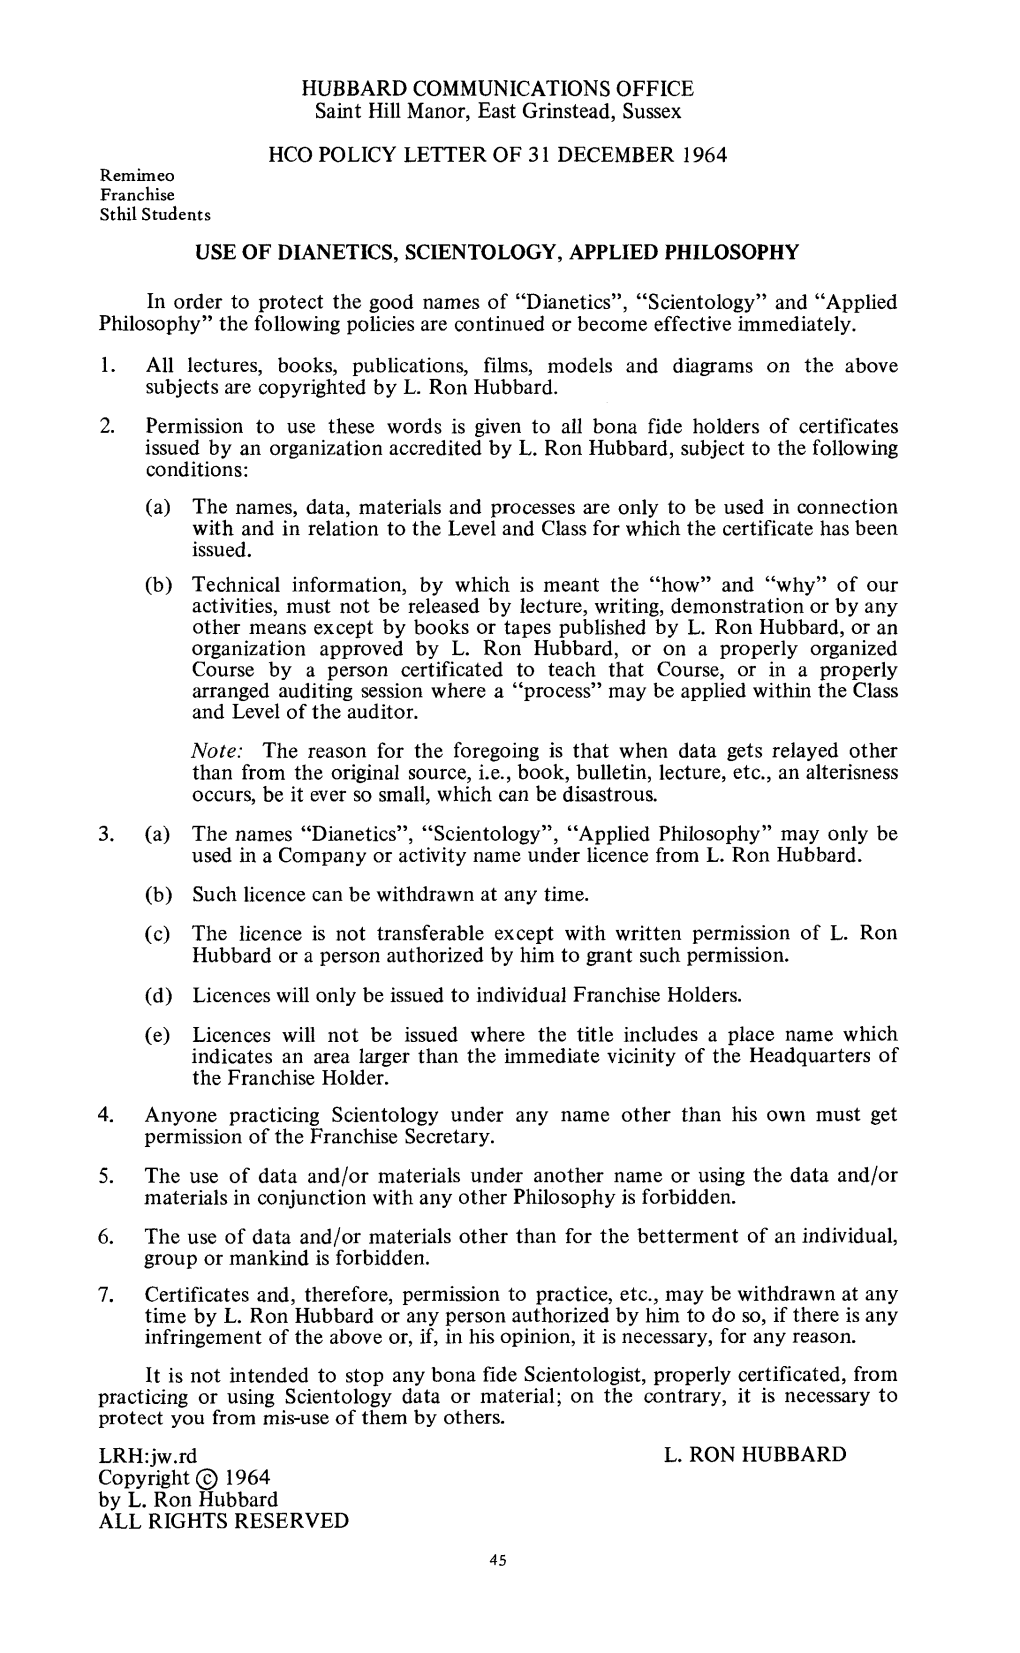 Hcopl 31 December 1964 Use of Dianetics, Scientology